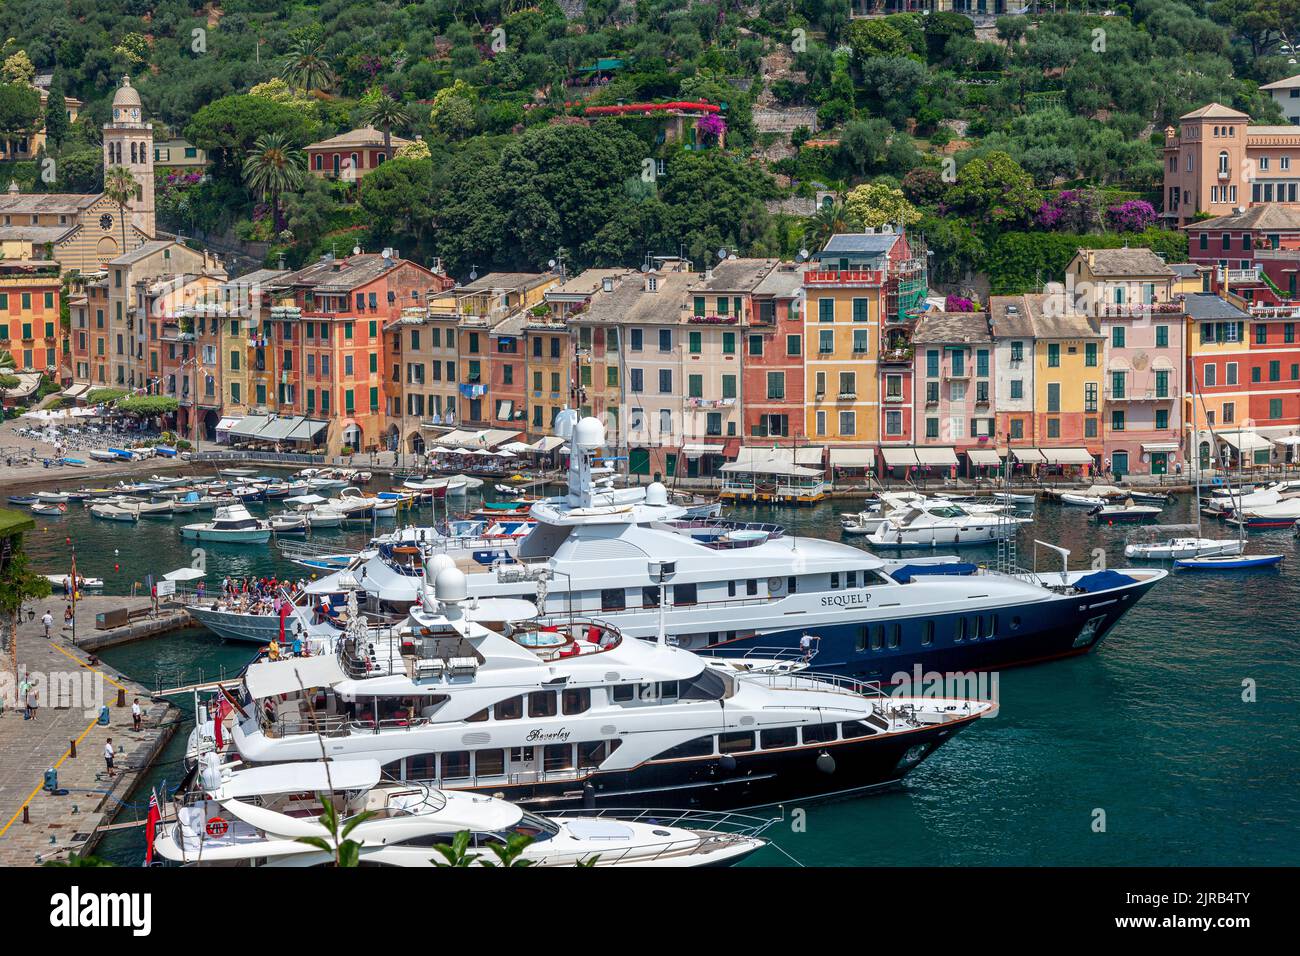 Bateaux amarrés dans le petit port de Portofino, ligurie, italie Banque D'Images